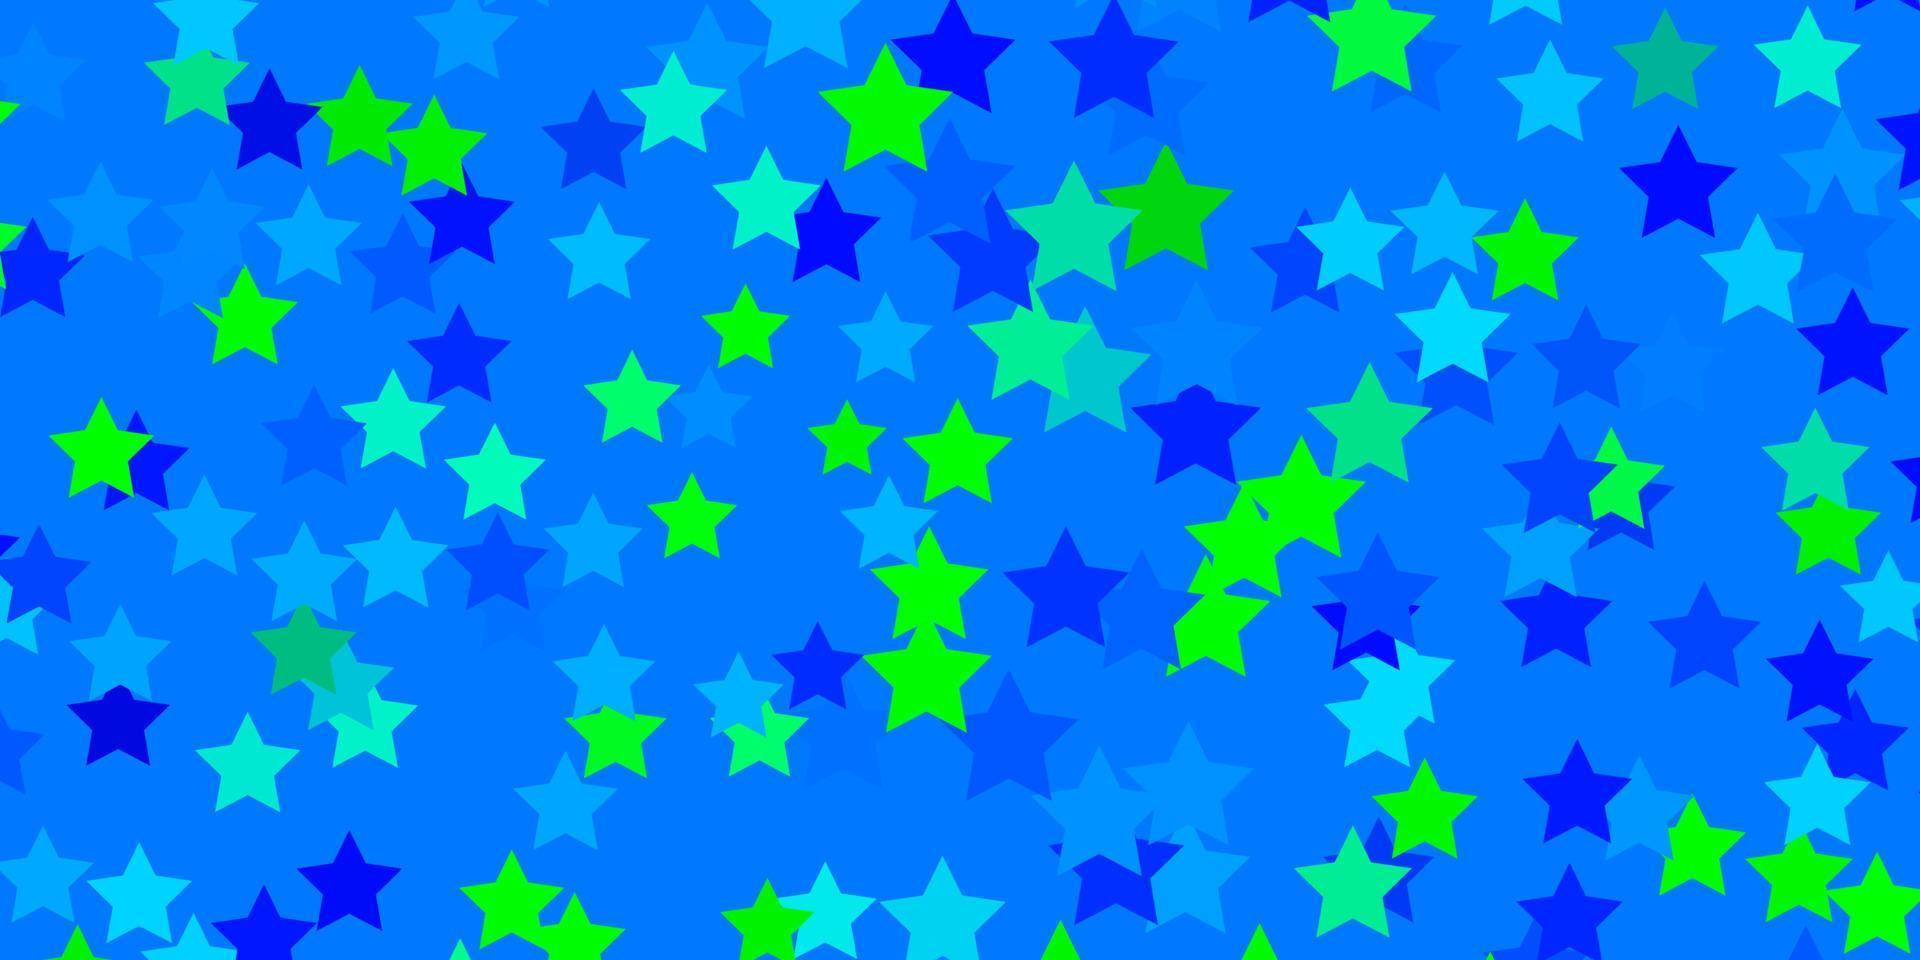 padrão de vetor azul e verde claro com estrelas abstratas.